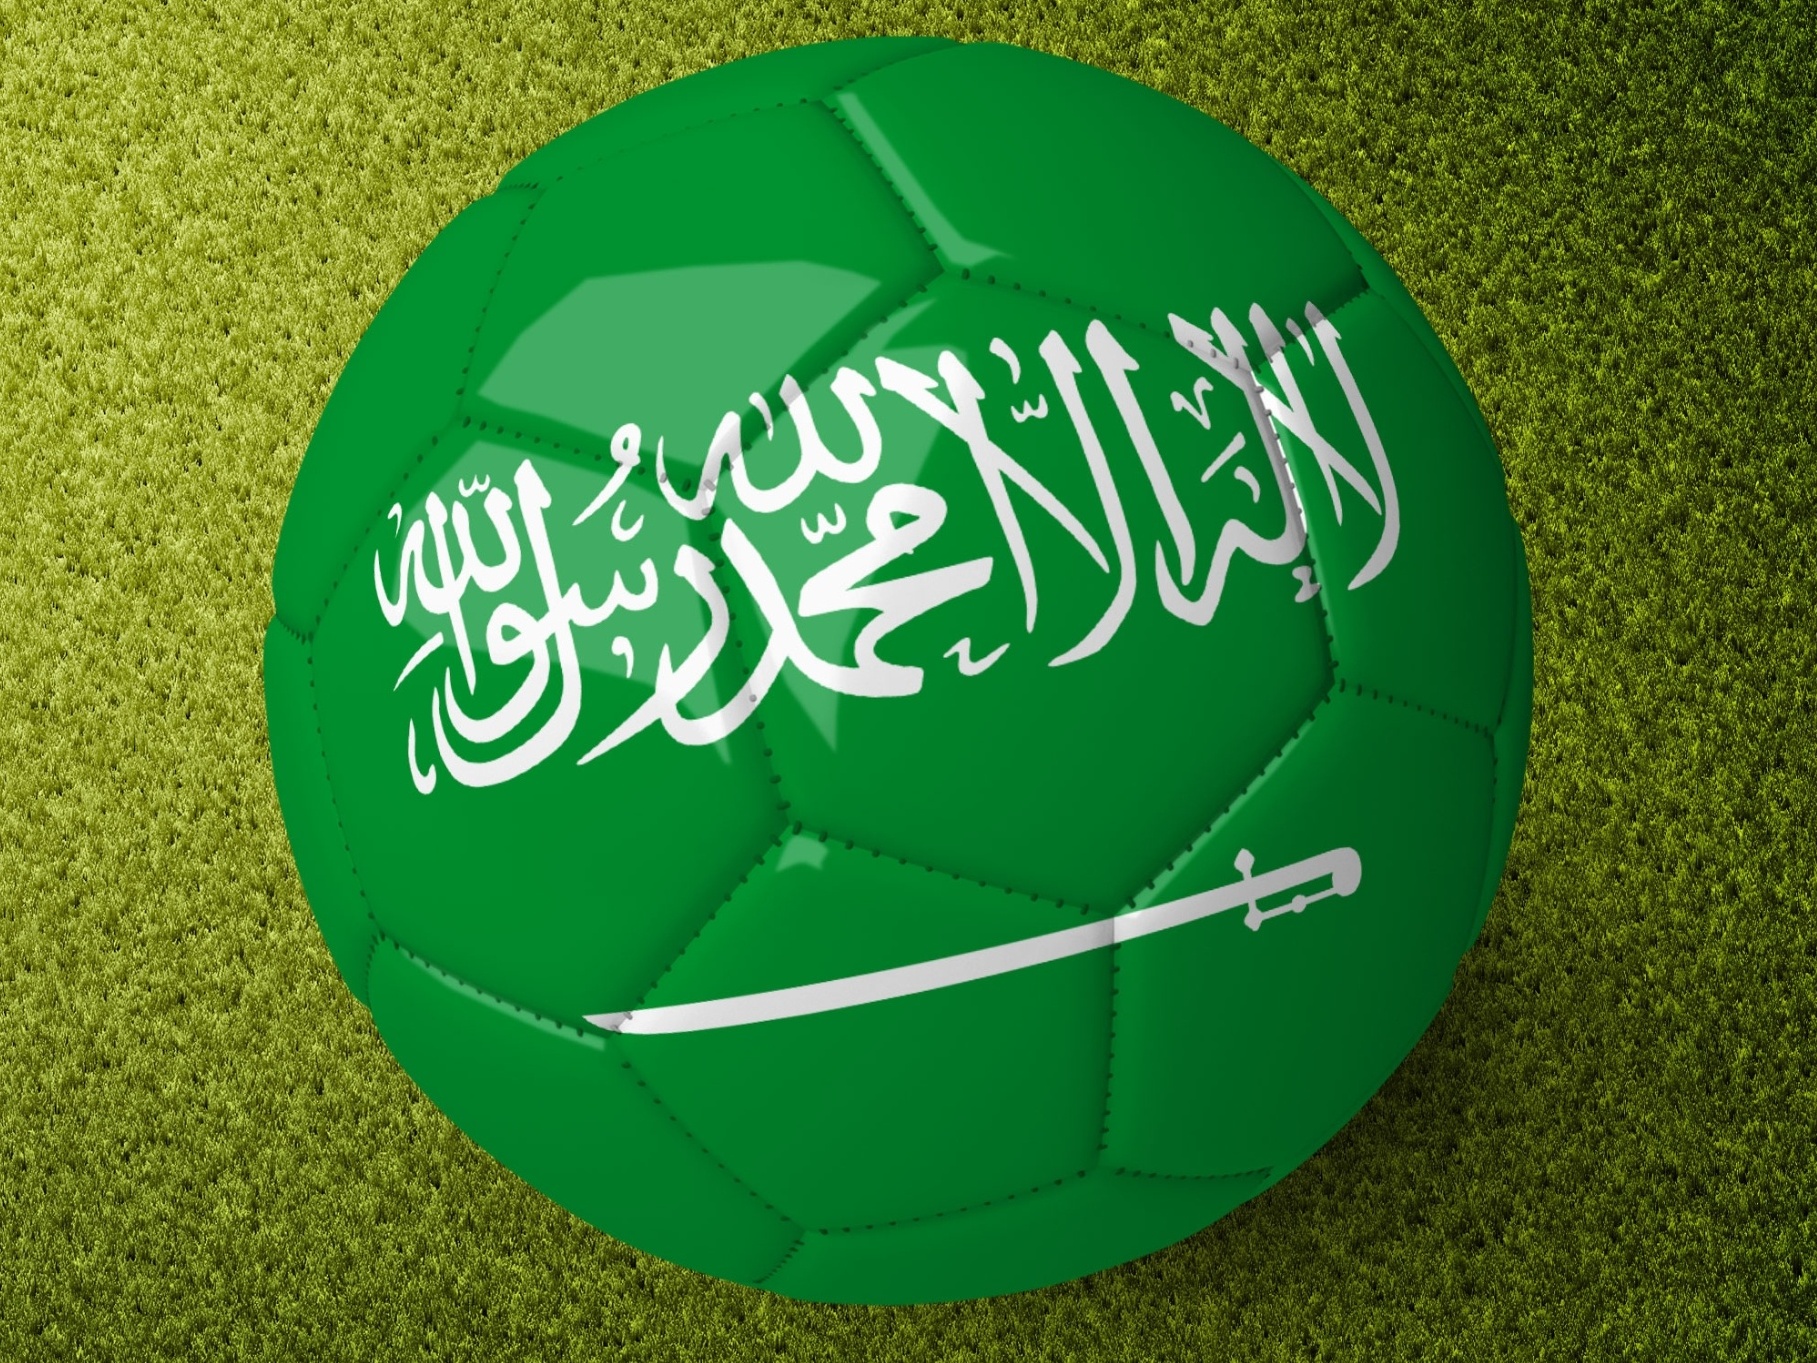 Quais craques do futebol estão na Arábia Saudita? - 10/08/2023